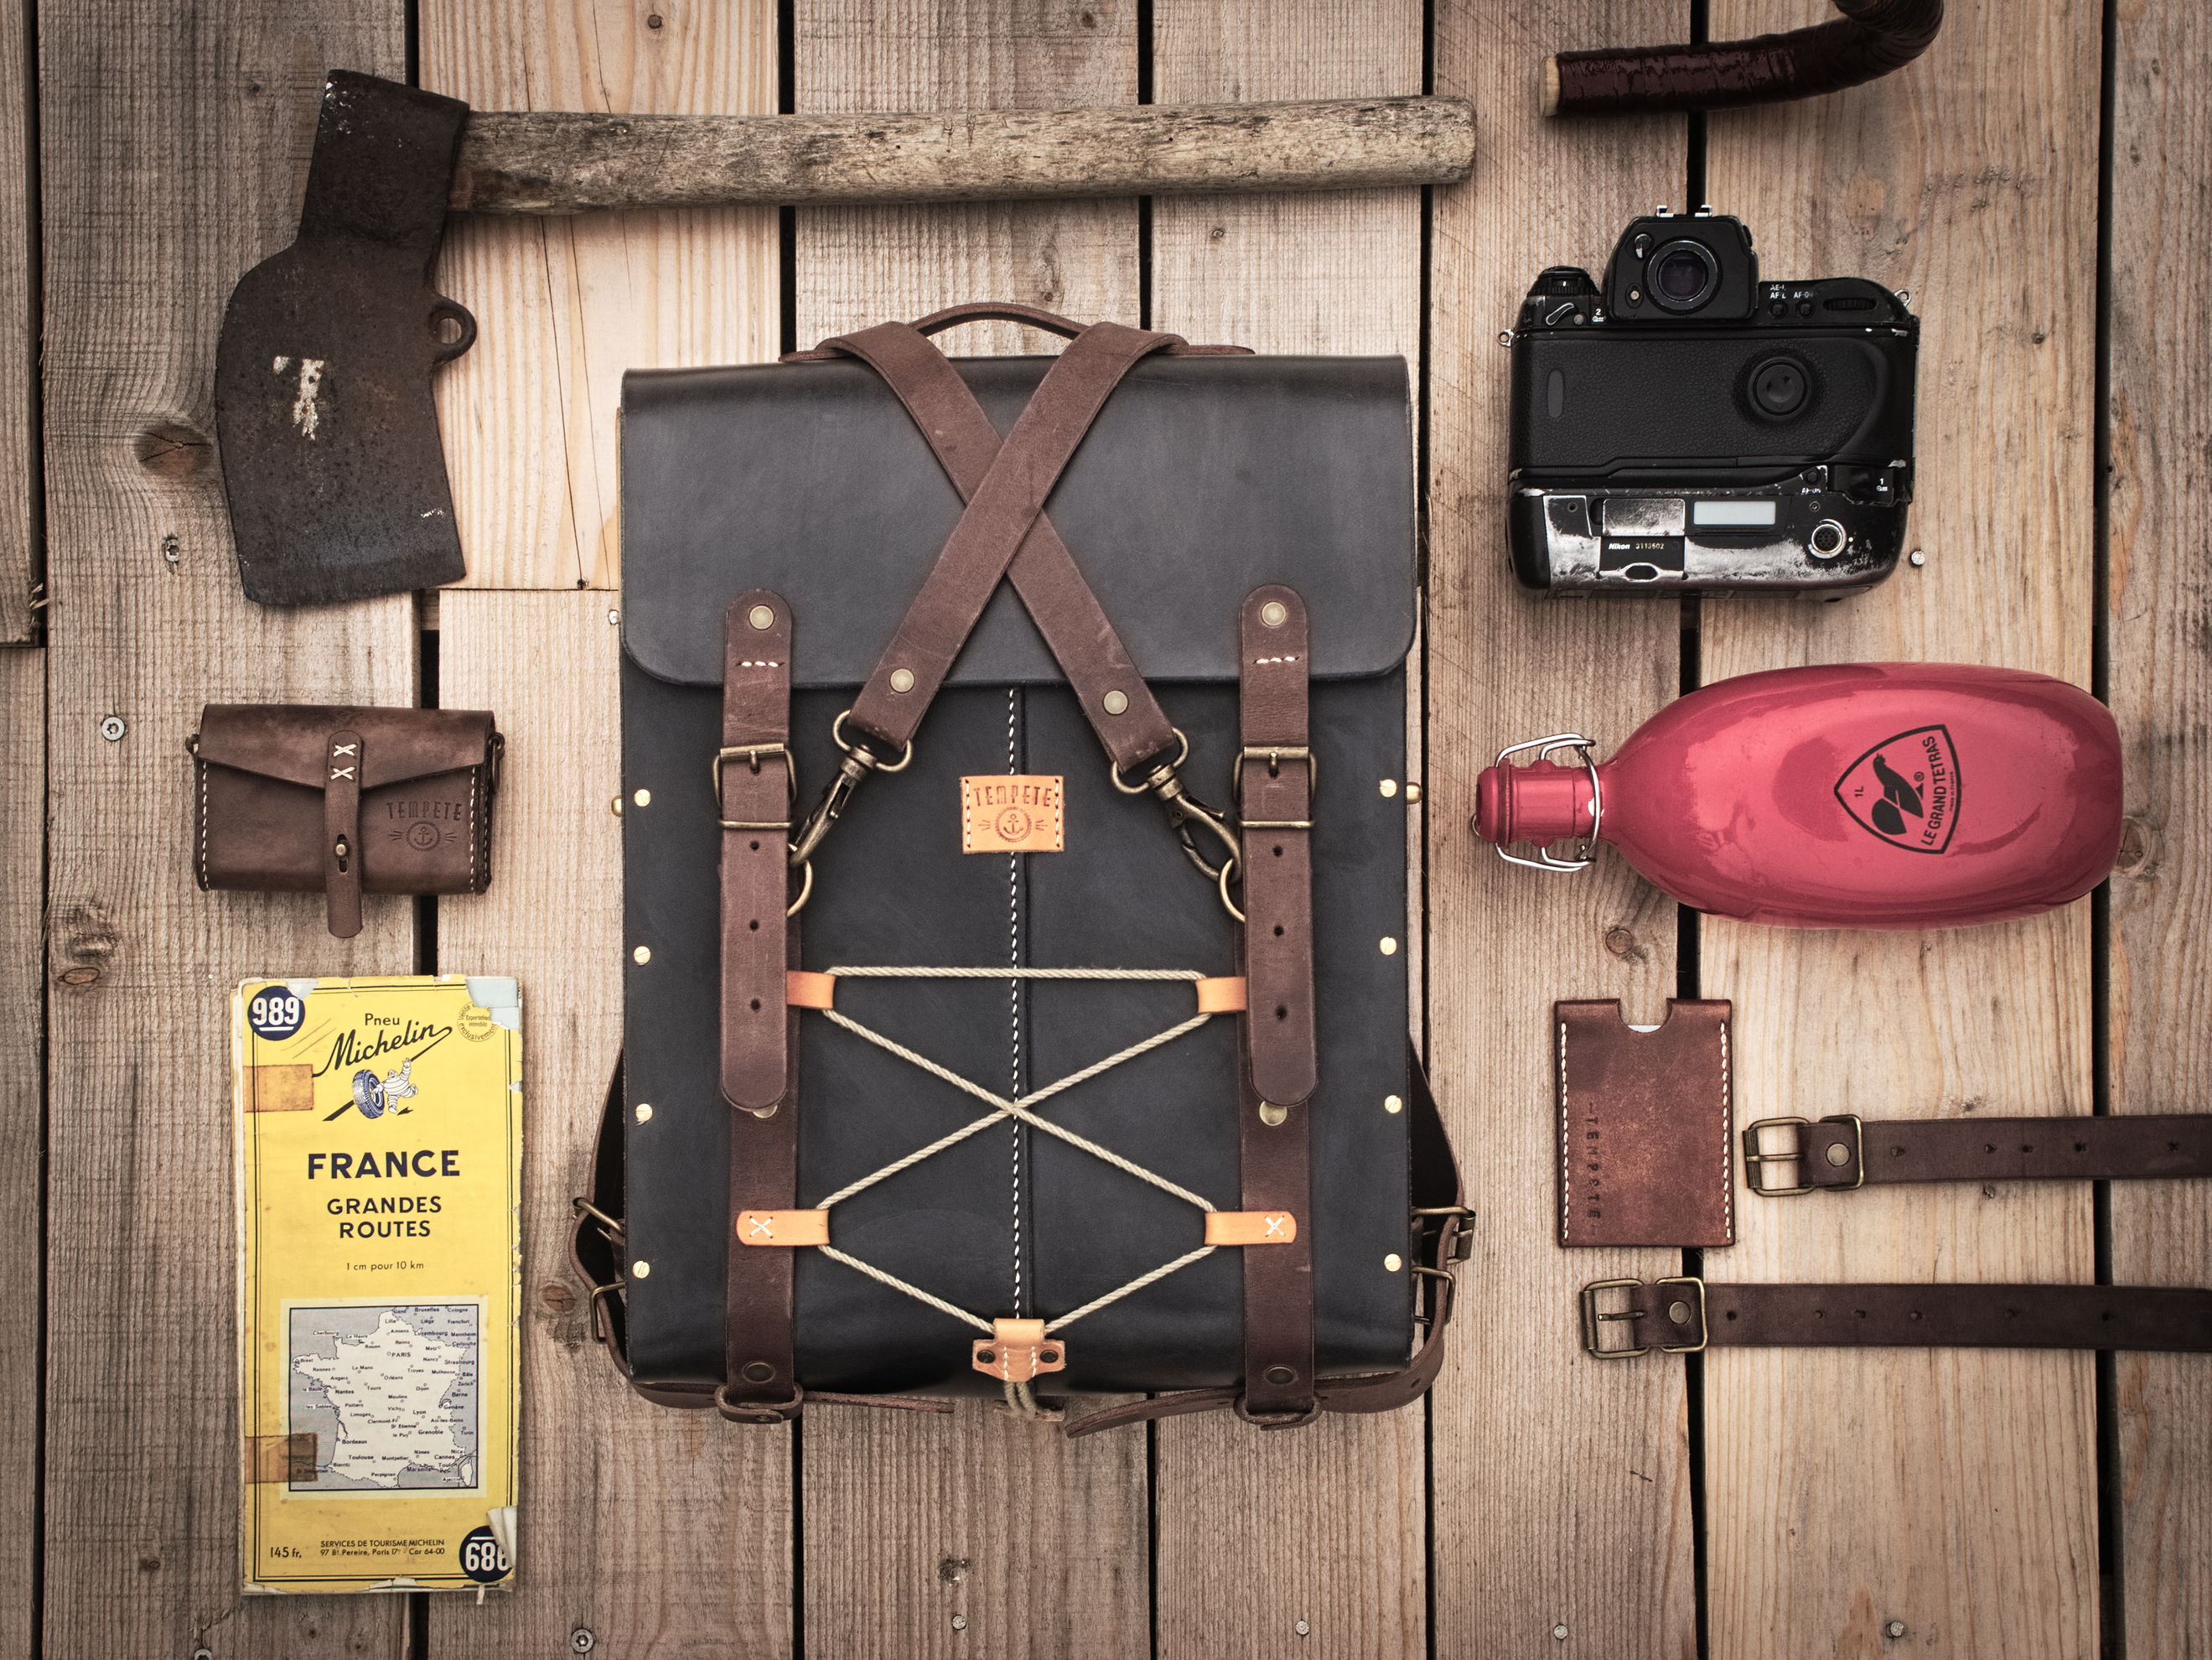 Le Backpack - Sac à dos cuir et bois - Miel, chocolat ou noir vintage